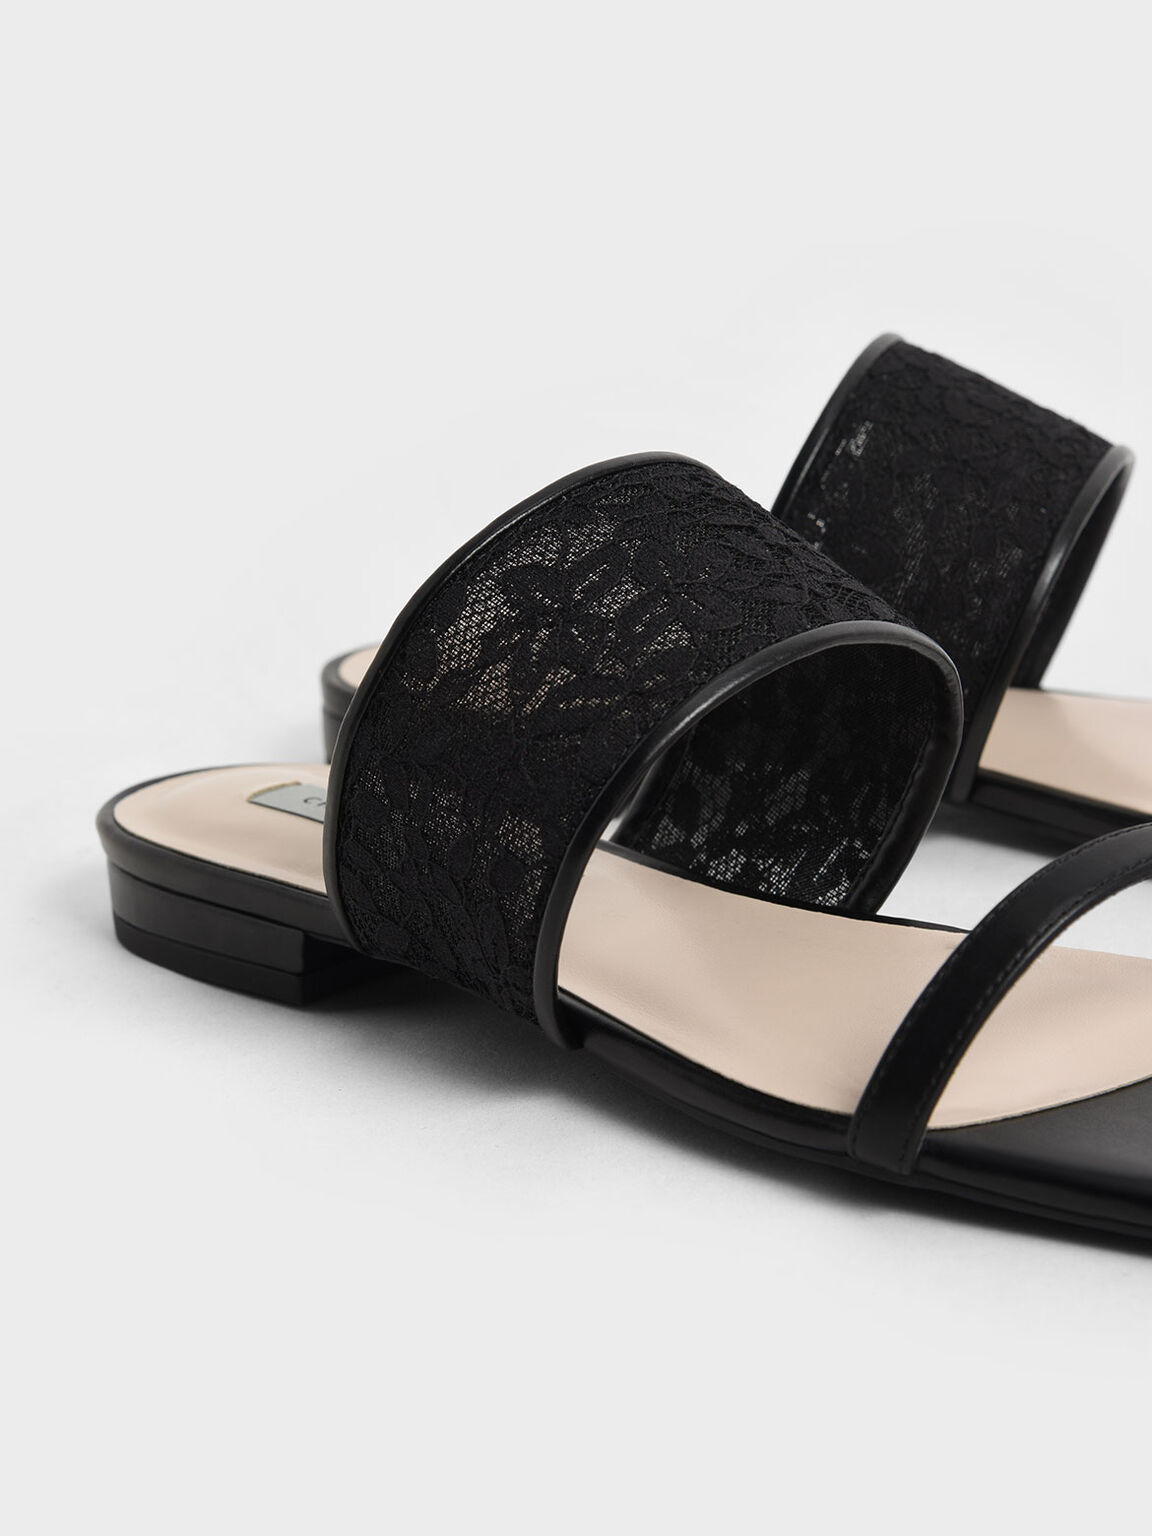 Sandal Slide Lace & Mesh, Black, hi-res